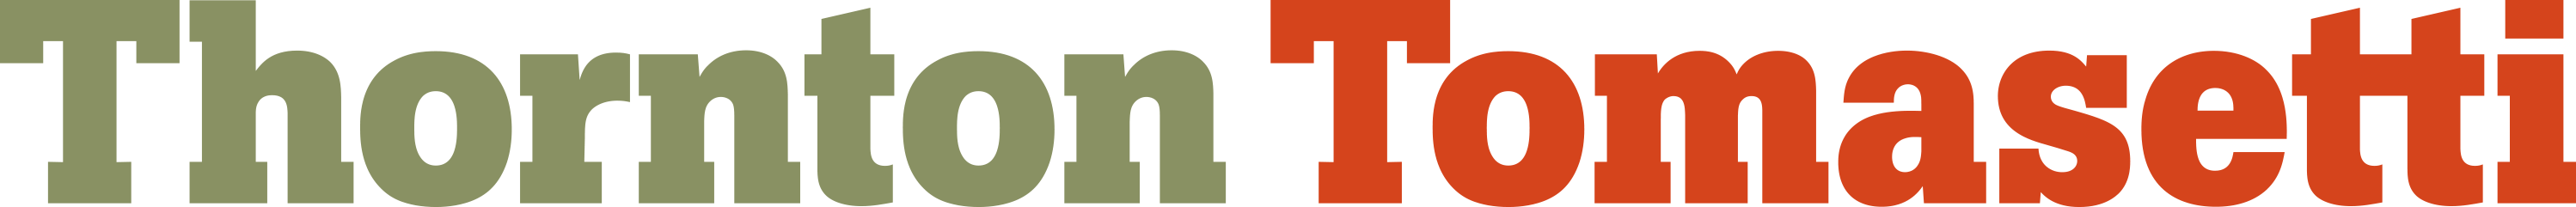 MMI Thornton Tomasetti Logo